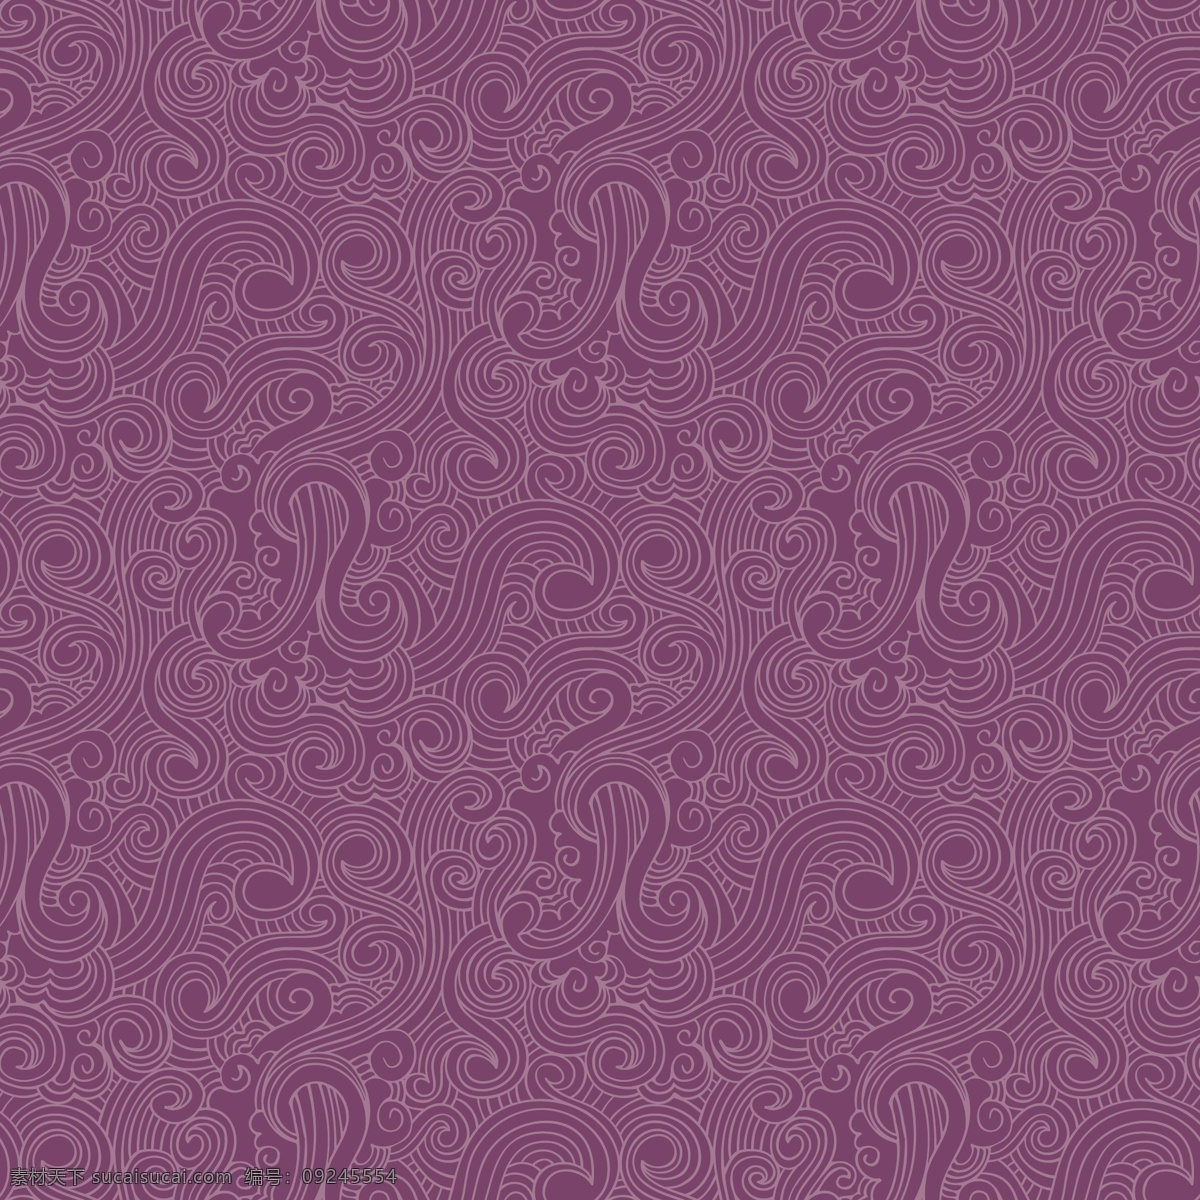 紫色 漩涡 图案 背景 年份 抽象 复古的背景 装饰 复古的图案 紫色的漩涡 观赏 紫色的背景 背景图案 绘制的 卷曲的 复古的装饰 抽象的图案 纠结